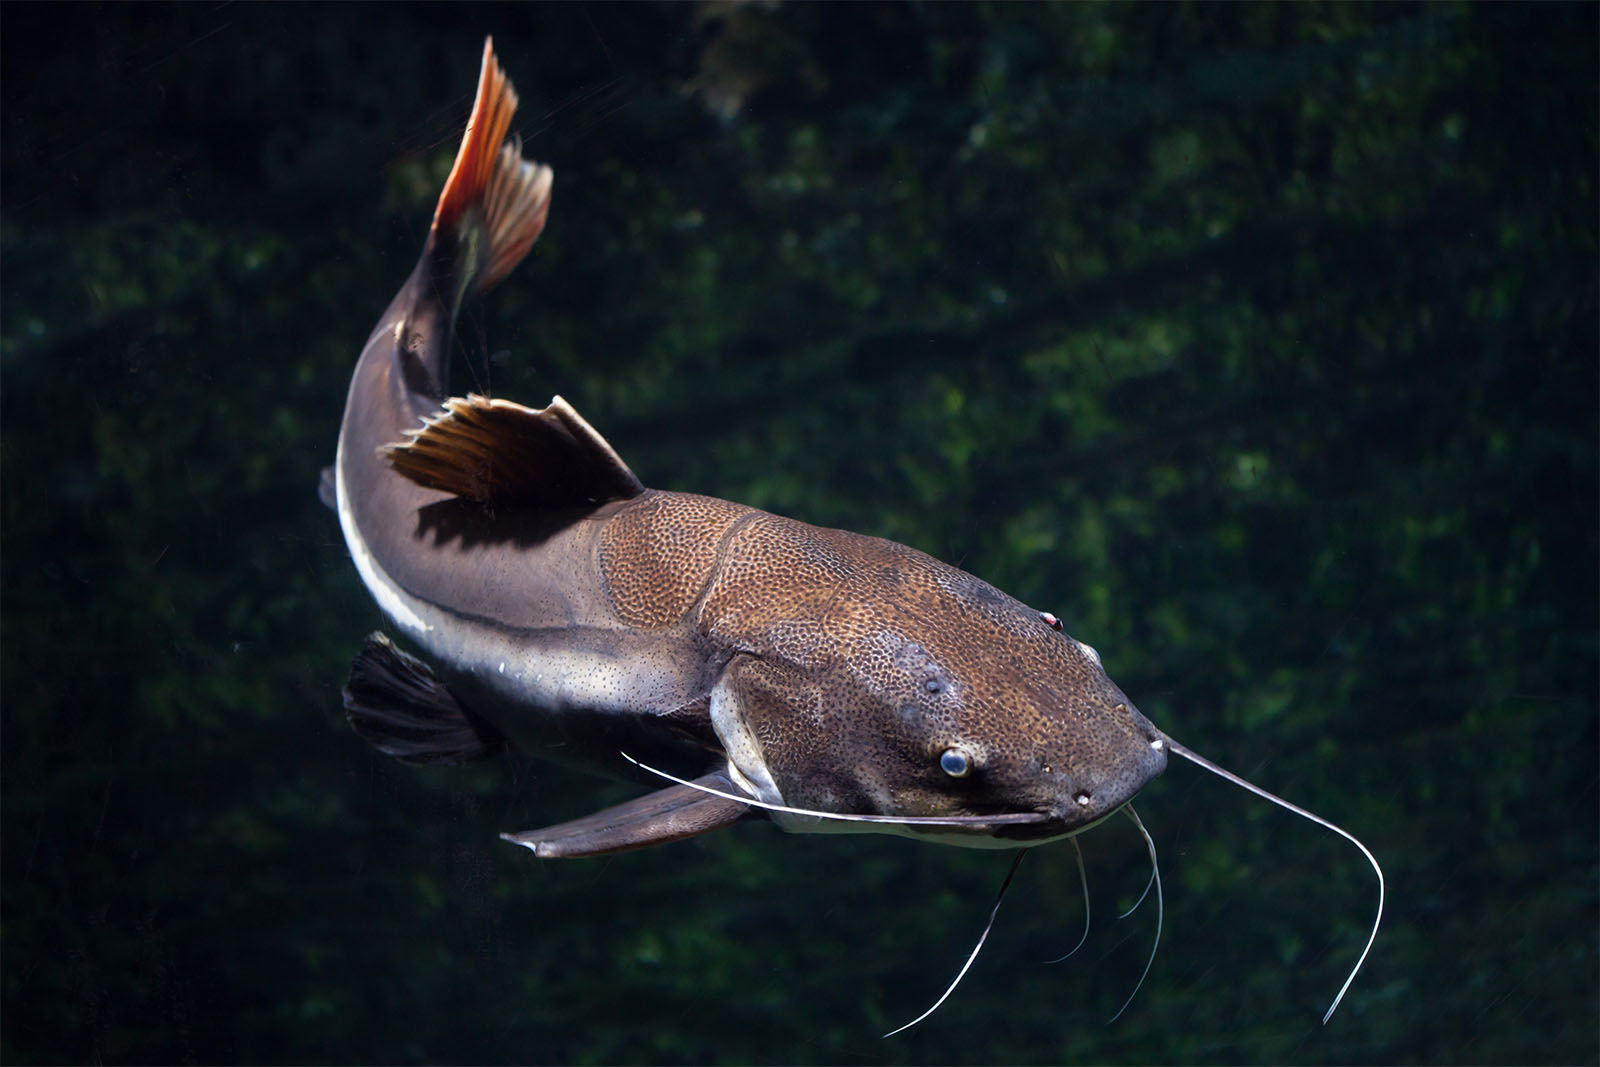 דג שפמנון, (phractocephalus,Hemioliopterus).